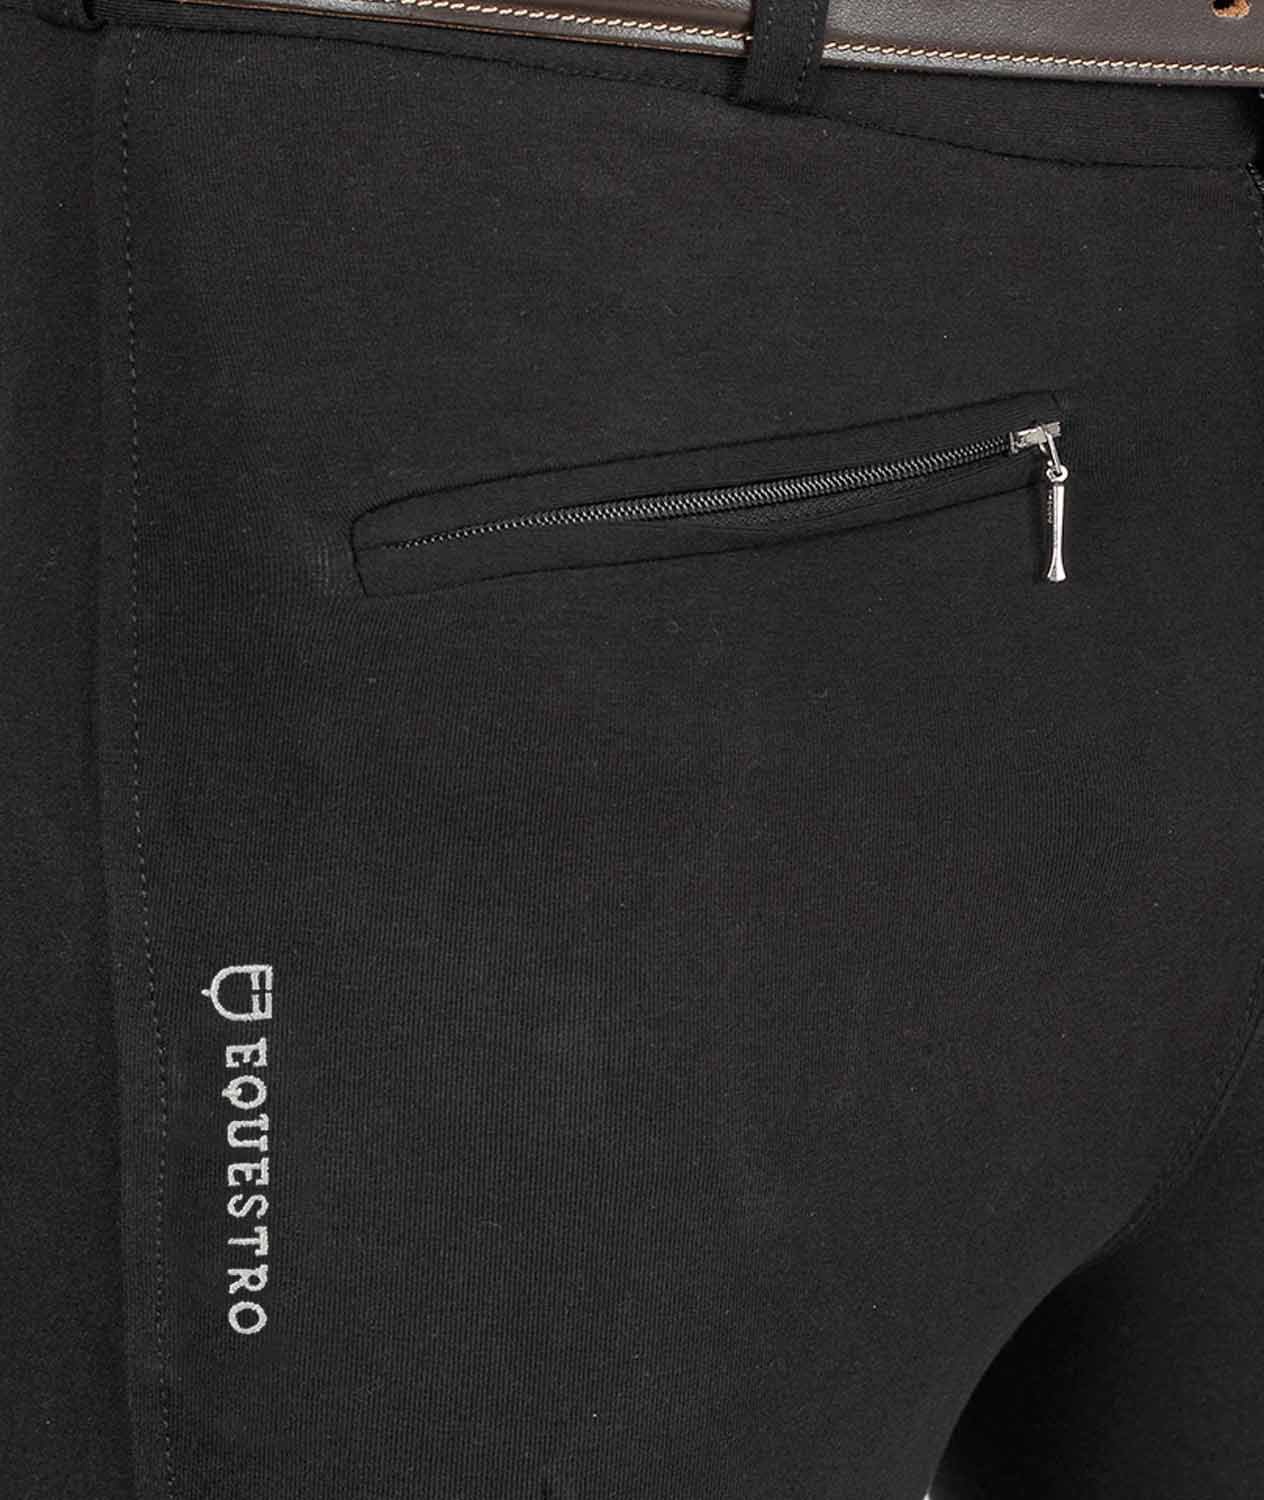 Pantalone da uomo per equitazione URANO a vita bassa in cotone elasticizzato - foto 5